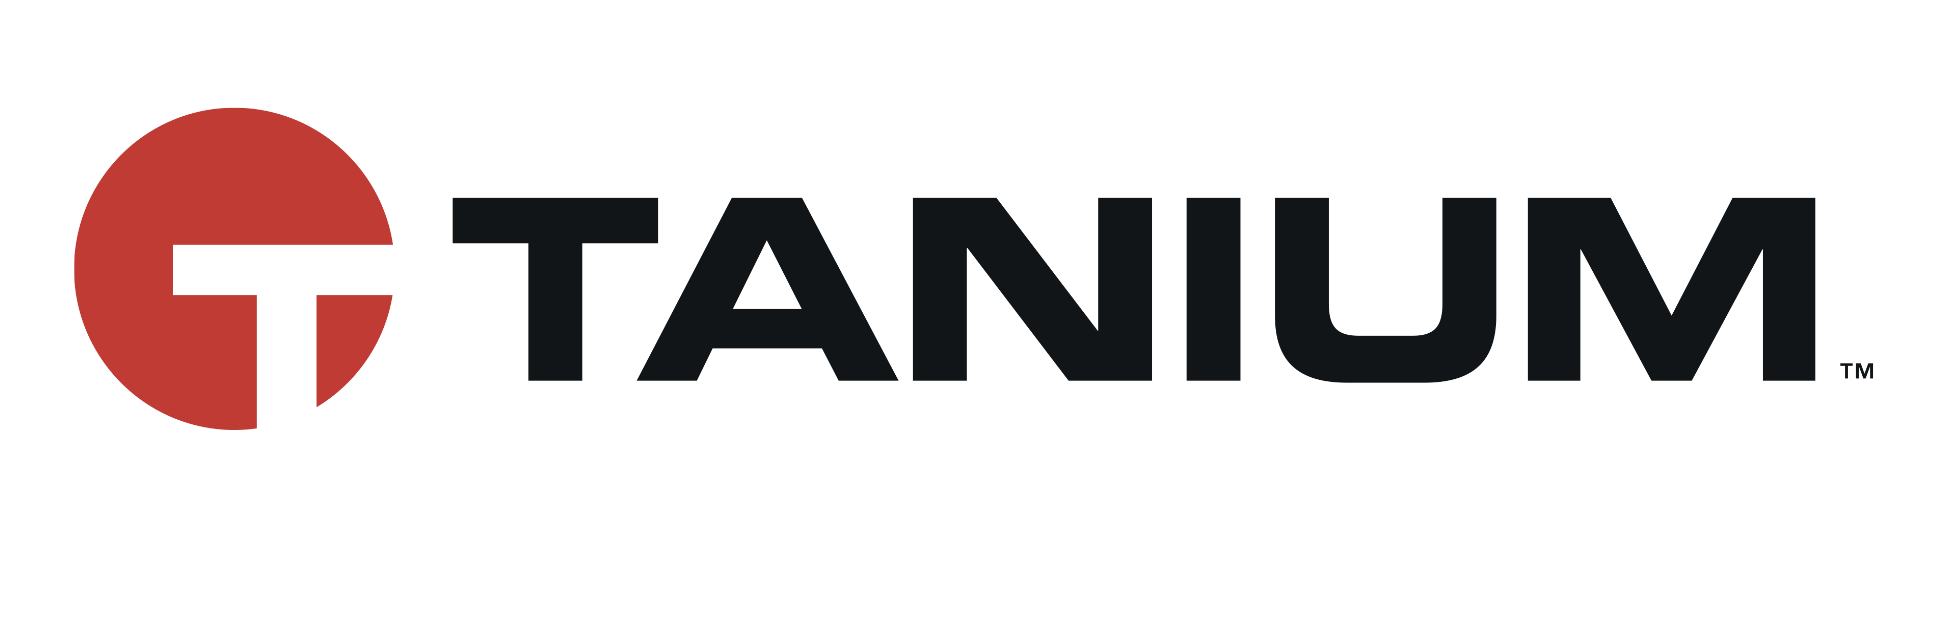 Tanium's logo